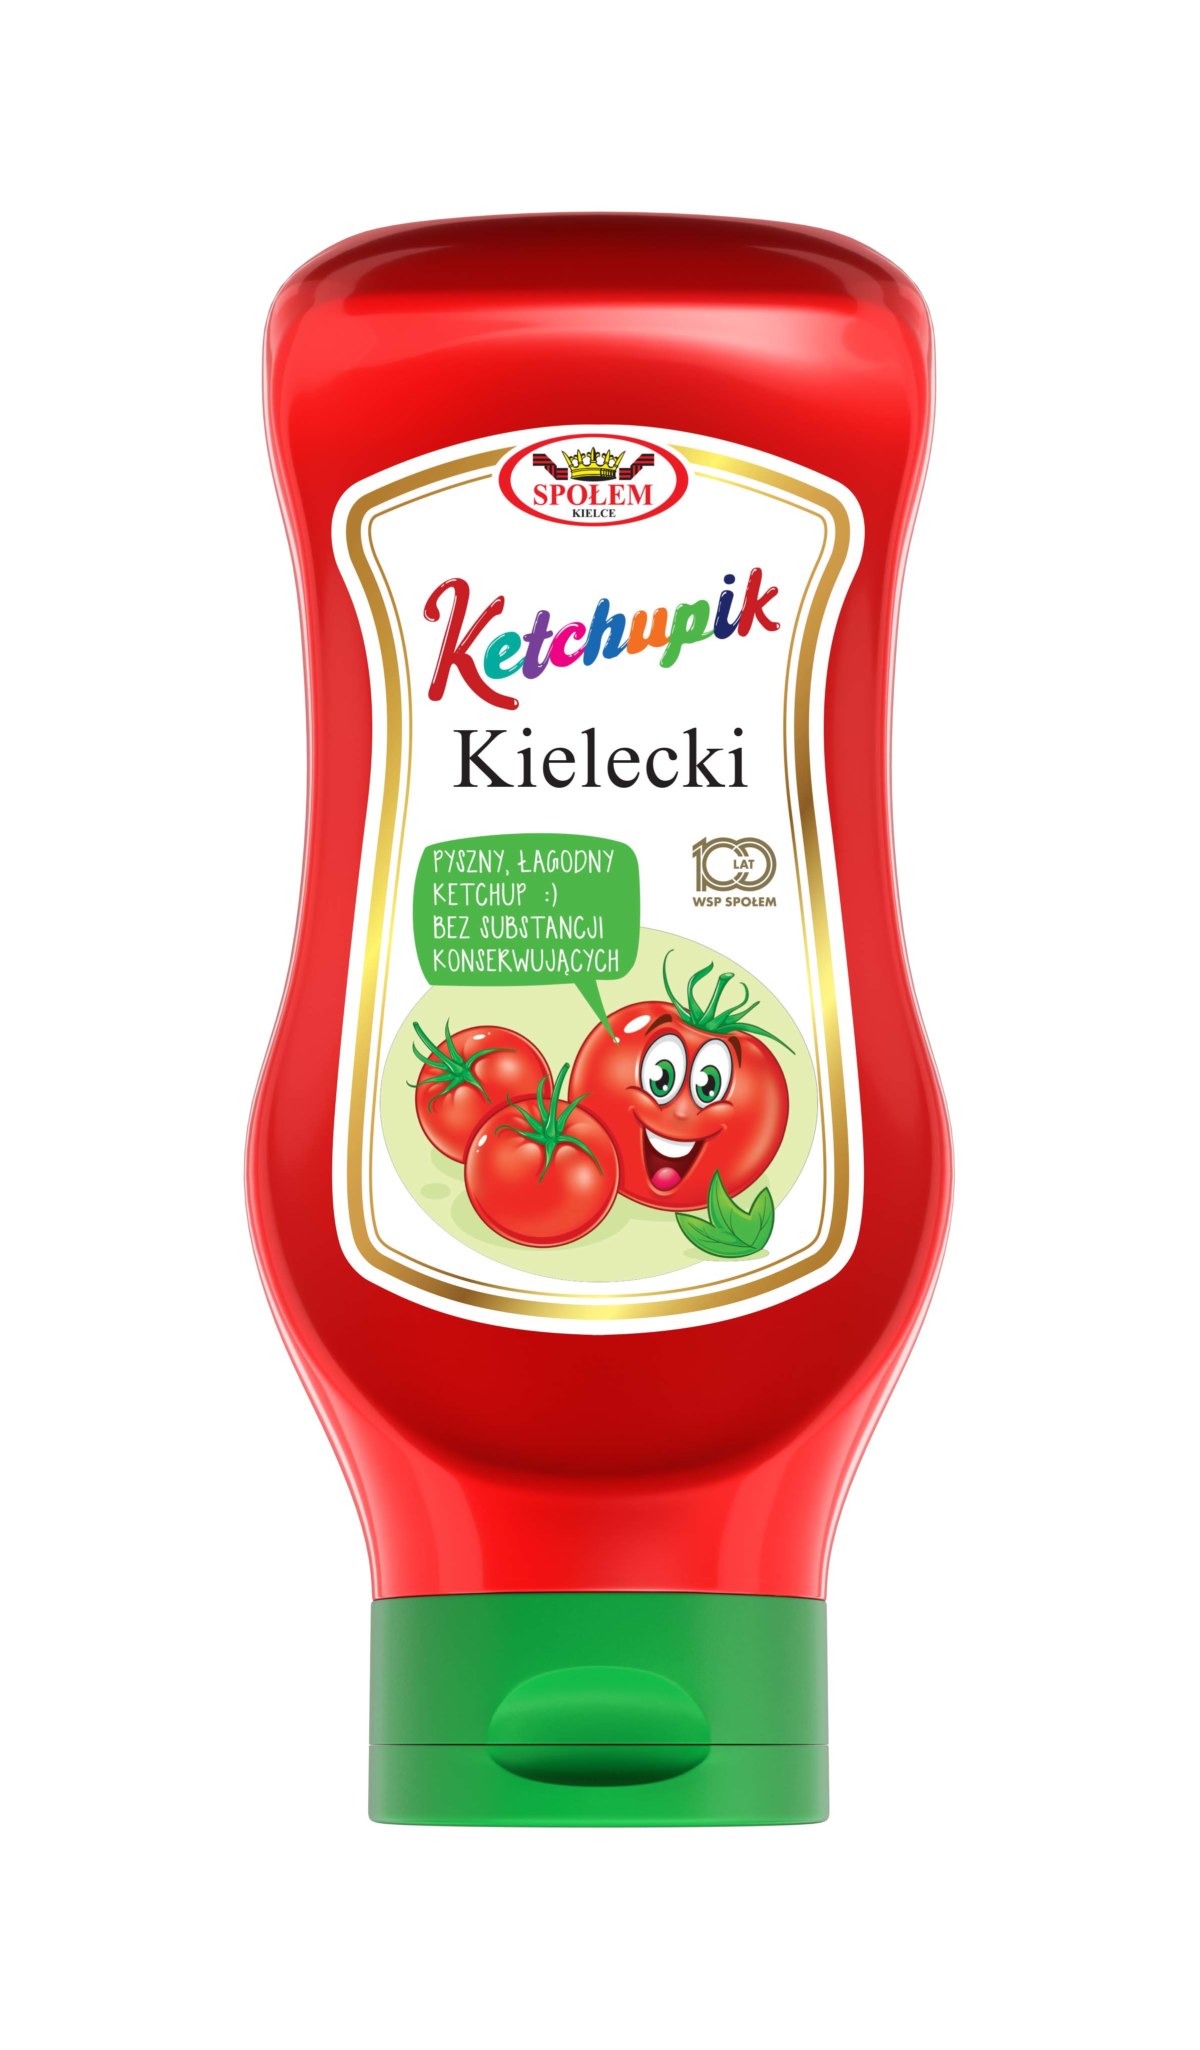 Ketchupik Kielecki